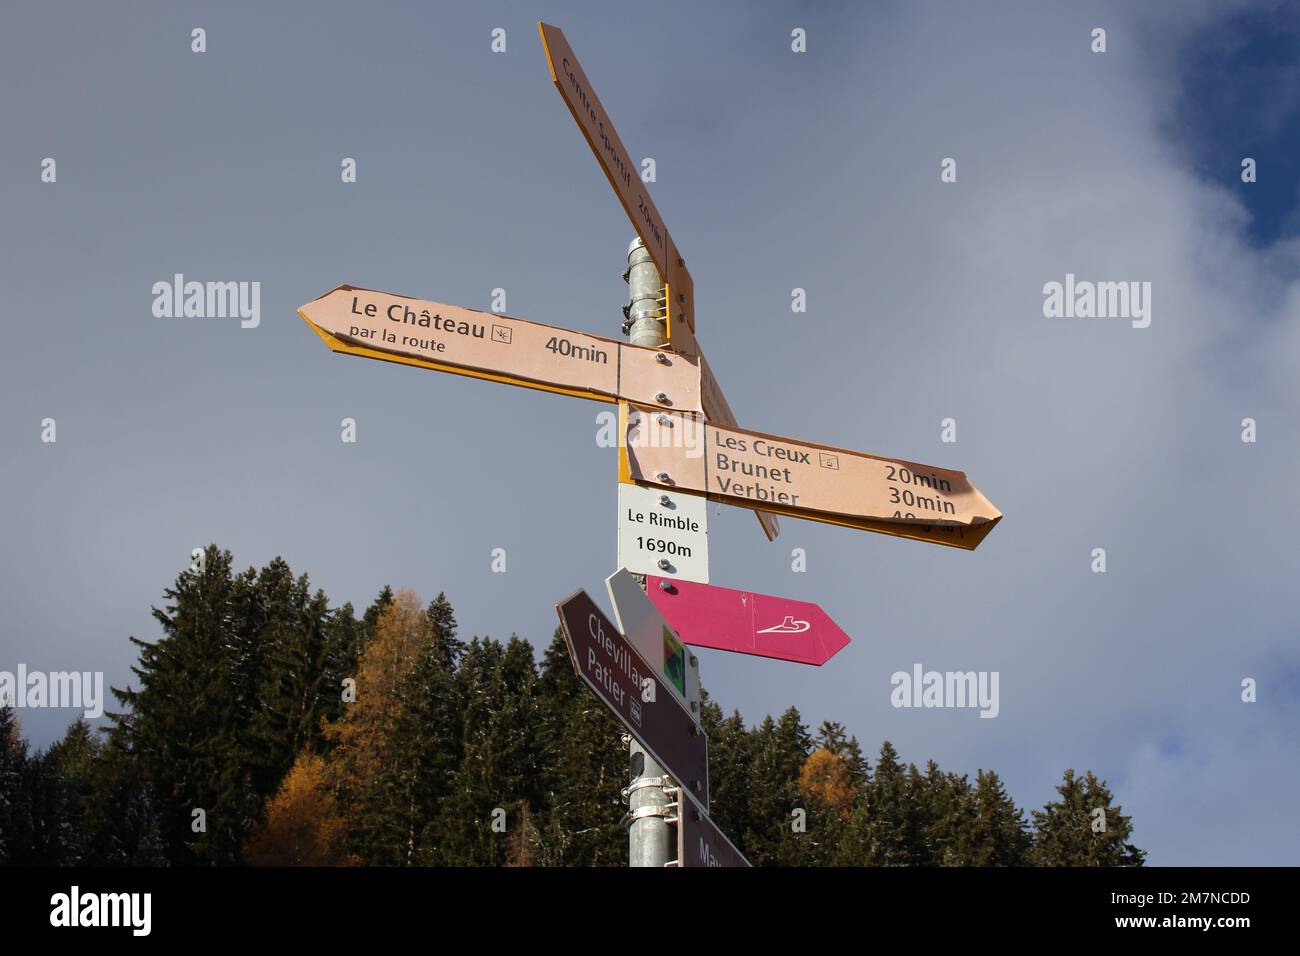 Vecchie indicazioni escursionistiche a Verbier, Svizzera, a le Rimble 1690m in su. L'indicazione più a sinistra indica le Chateau, a 40 minuti di strada Foto Stock